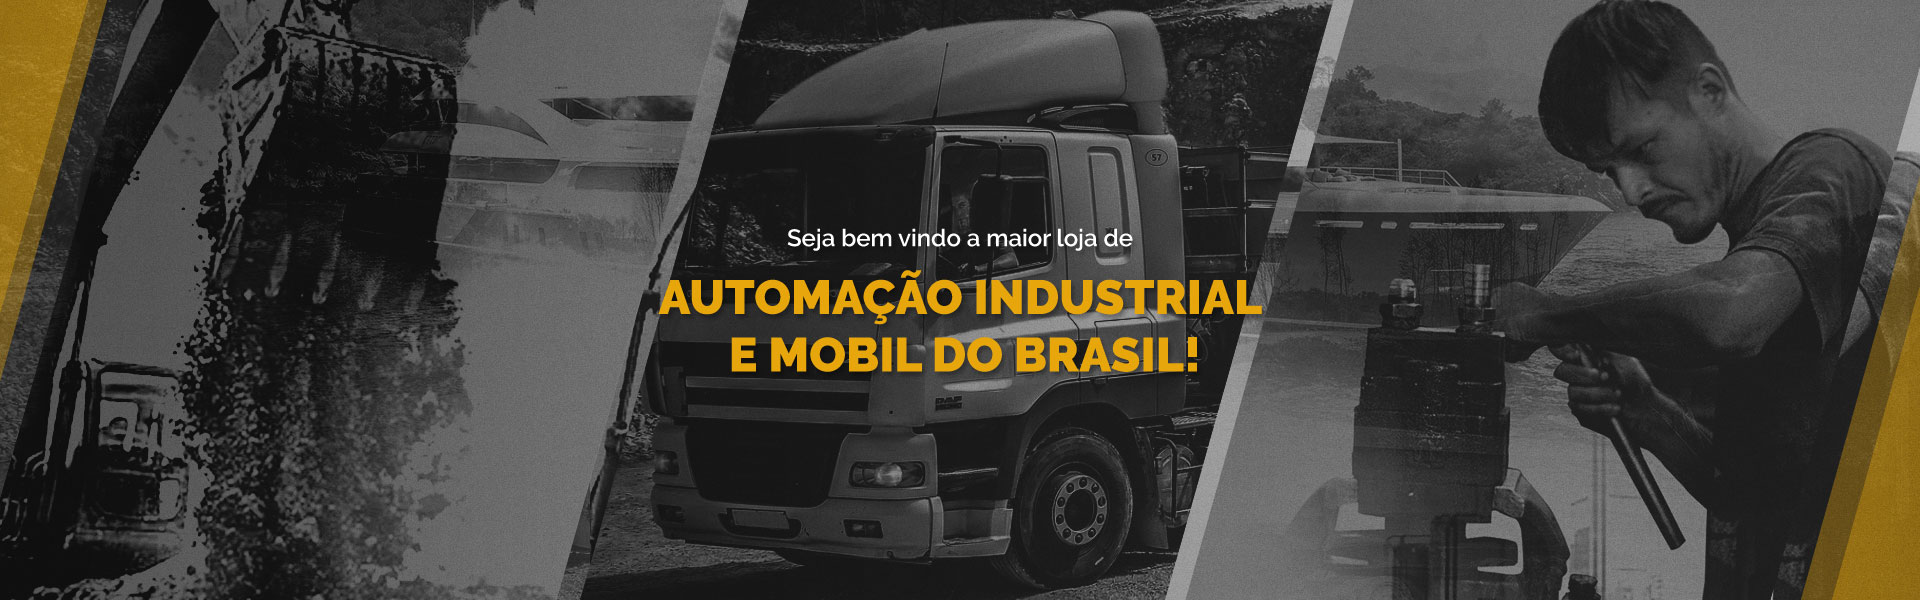 Automação Industrial e Mobil do Brasil